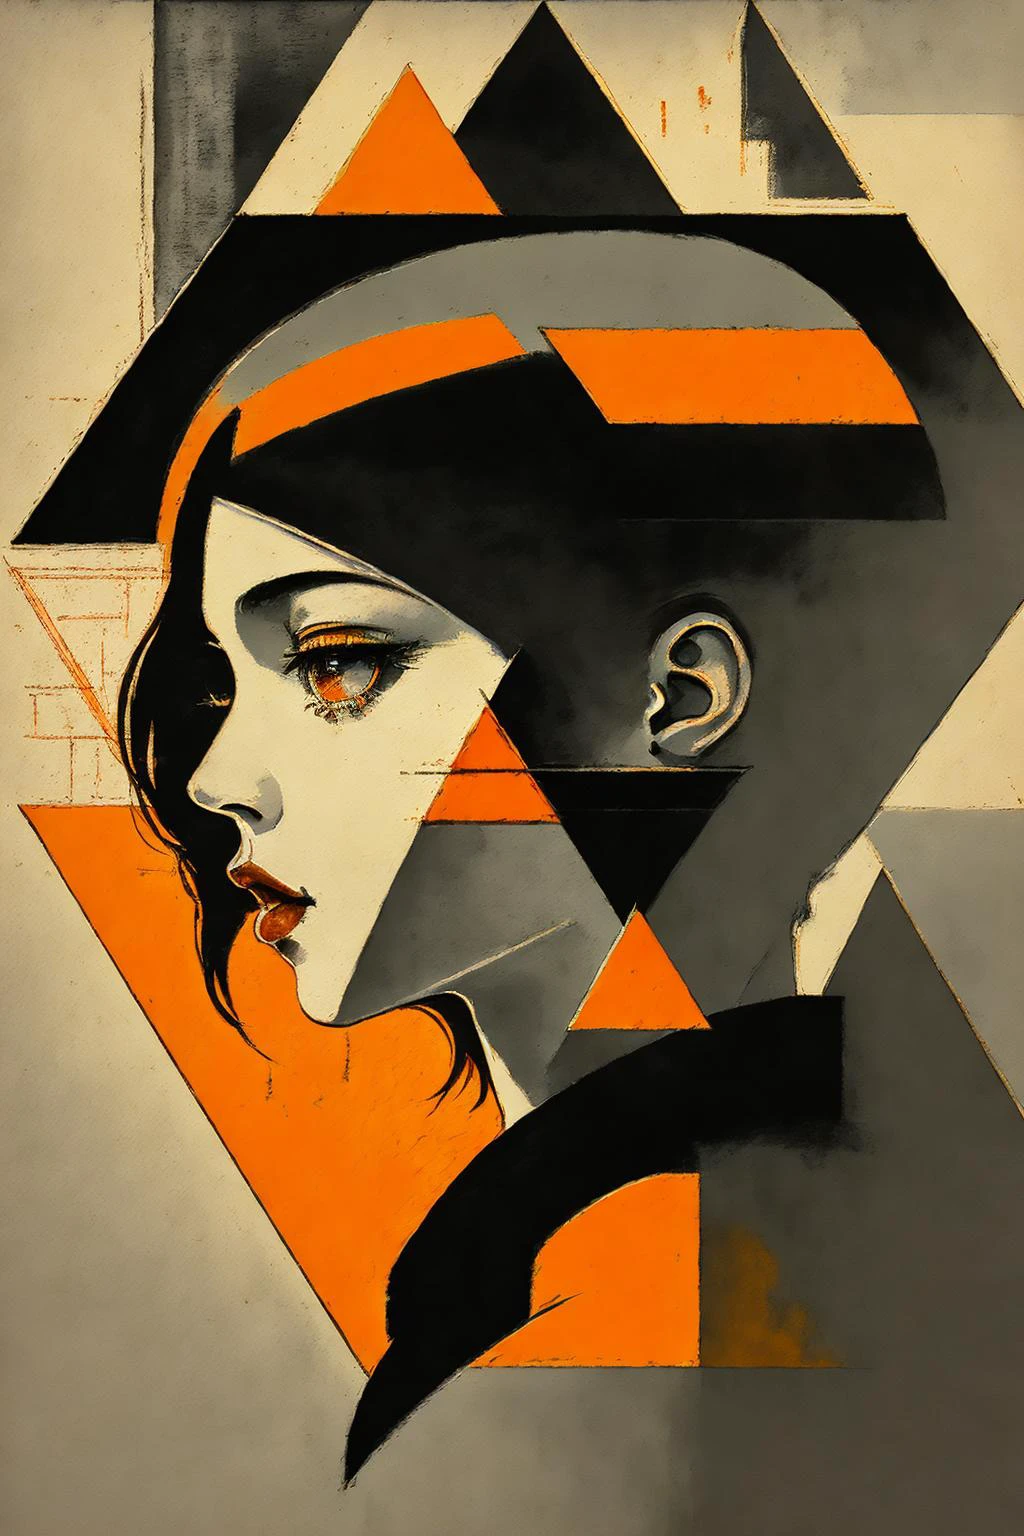 (Meisterwerk, 4k ,Extrem detailliert,RAW-Foto:1.2),Illustration,
(Porträt:1.2),(Von der Seite:1.2),(richtig aussehen:1.2),
(einfacher Hintergrund,schwarzer und orangefarbener Hintergrund1.4),
(Art Deco:1.4),
(Minimalismus:1.4),
(Sauber:1.4),
(Wohnung_Farbe:1.4),
(Geometrisches Muster:1.4),
(Dreieck:1.5),
CCDDA-Kunststil